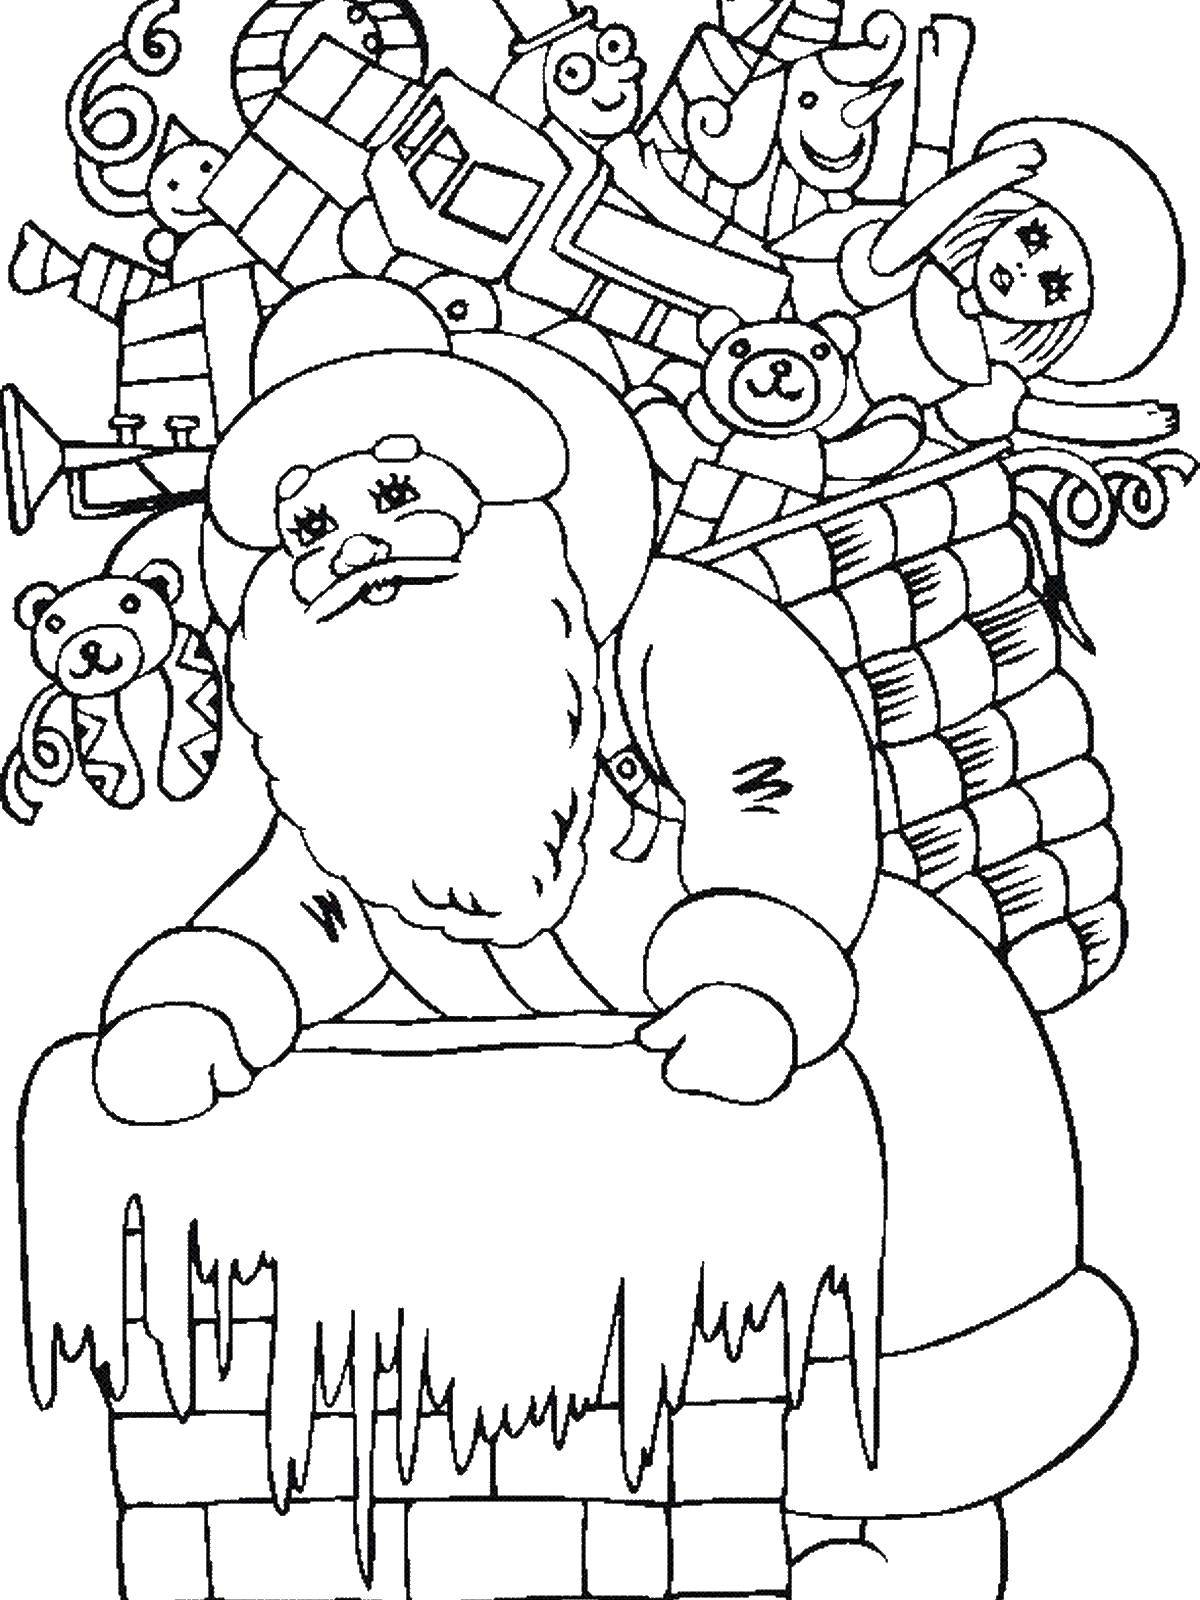 Название: Раскраска Дед мороз принёс подарочки. Категория: дед мороз. Теги: Новый Год, Дед Мороз, Санта Клаус, подарки.